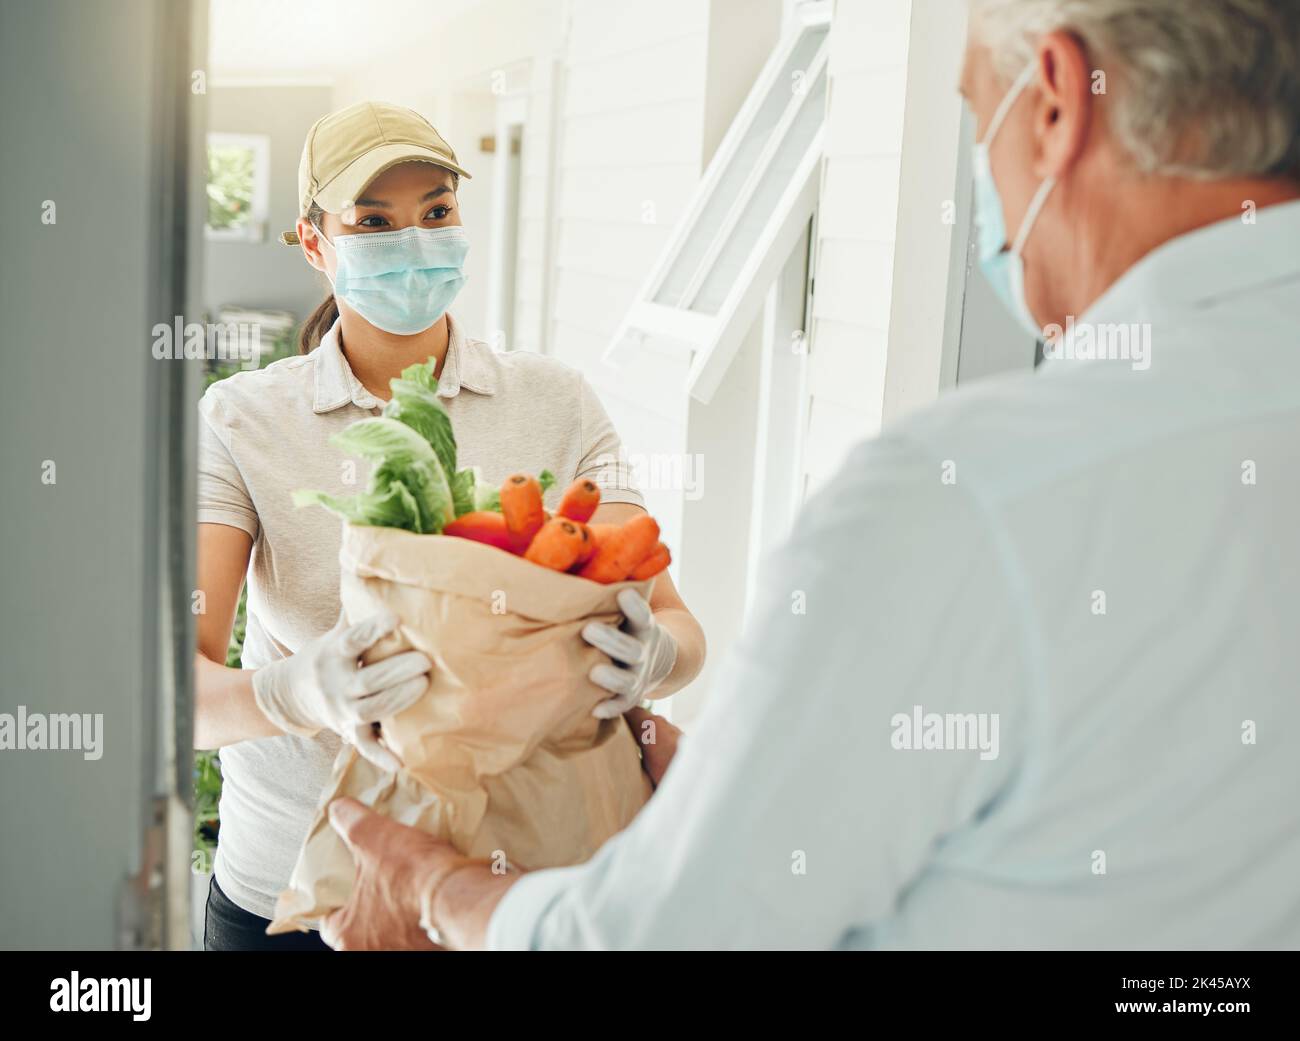 Livraison de nourriture, virus et vieil homme dans le masque de visage pendant la collecte de covid épicerie et des légumes sains à la maison. Volontaire pandémique donnant des personnes âgées Banque D'Images